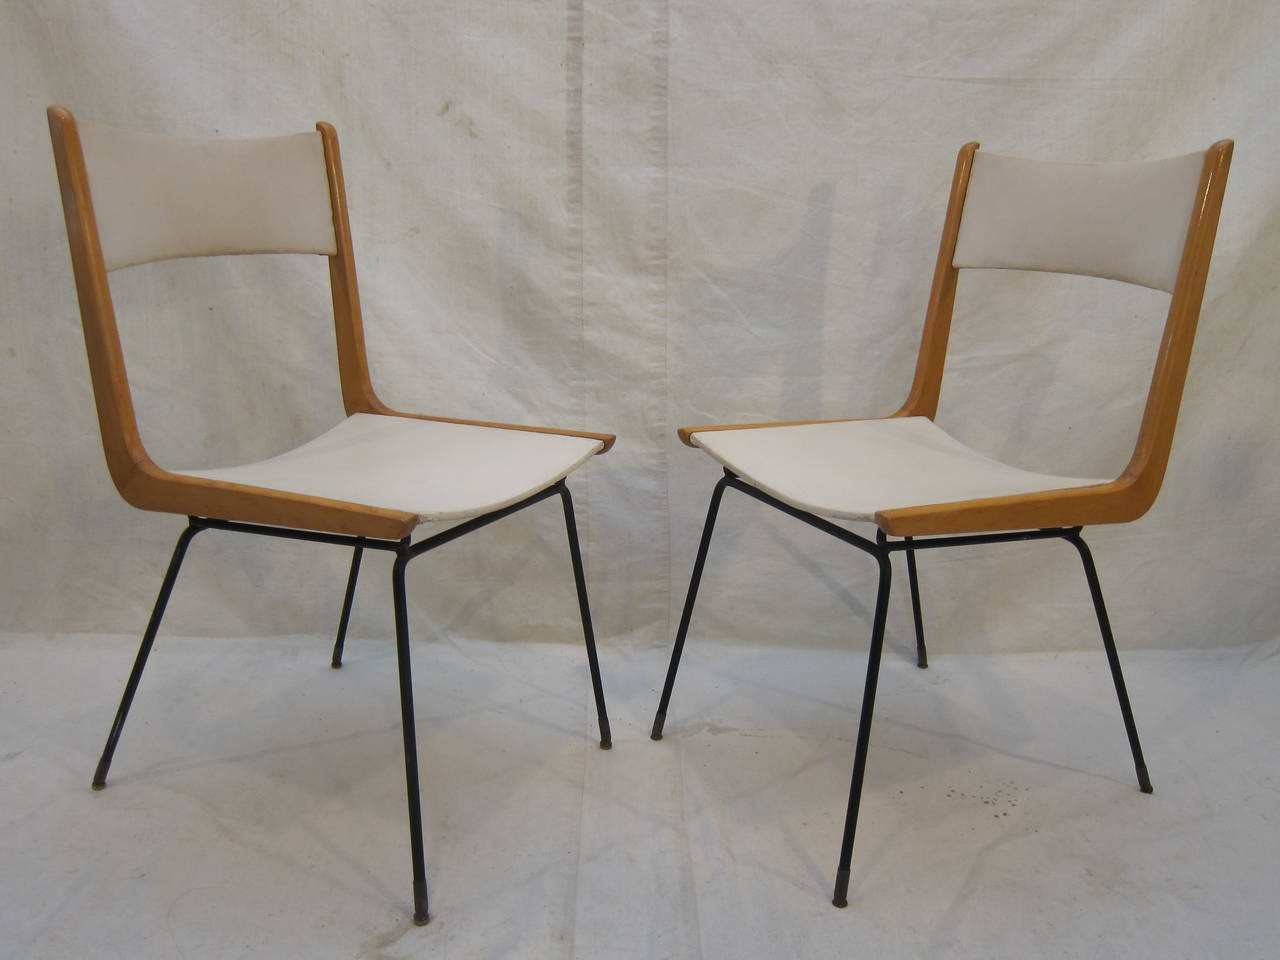 Italian Set of Four Chairs, Style of Carlo Di Carli